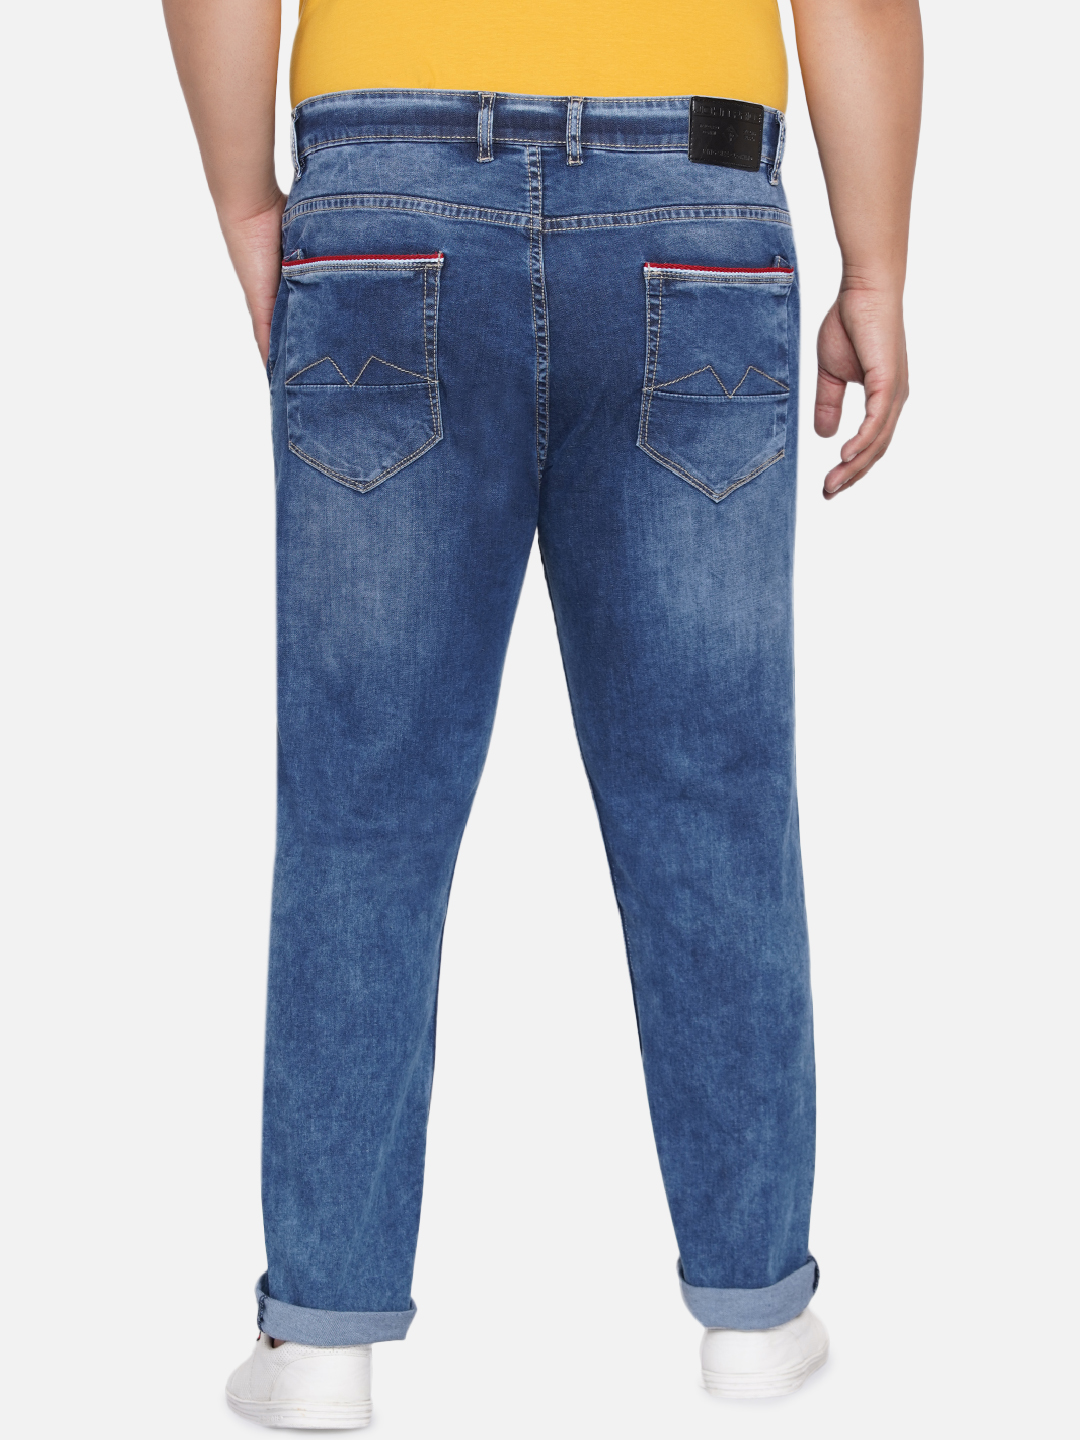 bottomwear/jeans/EJPJ25021/ejpj25021-5.jpg